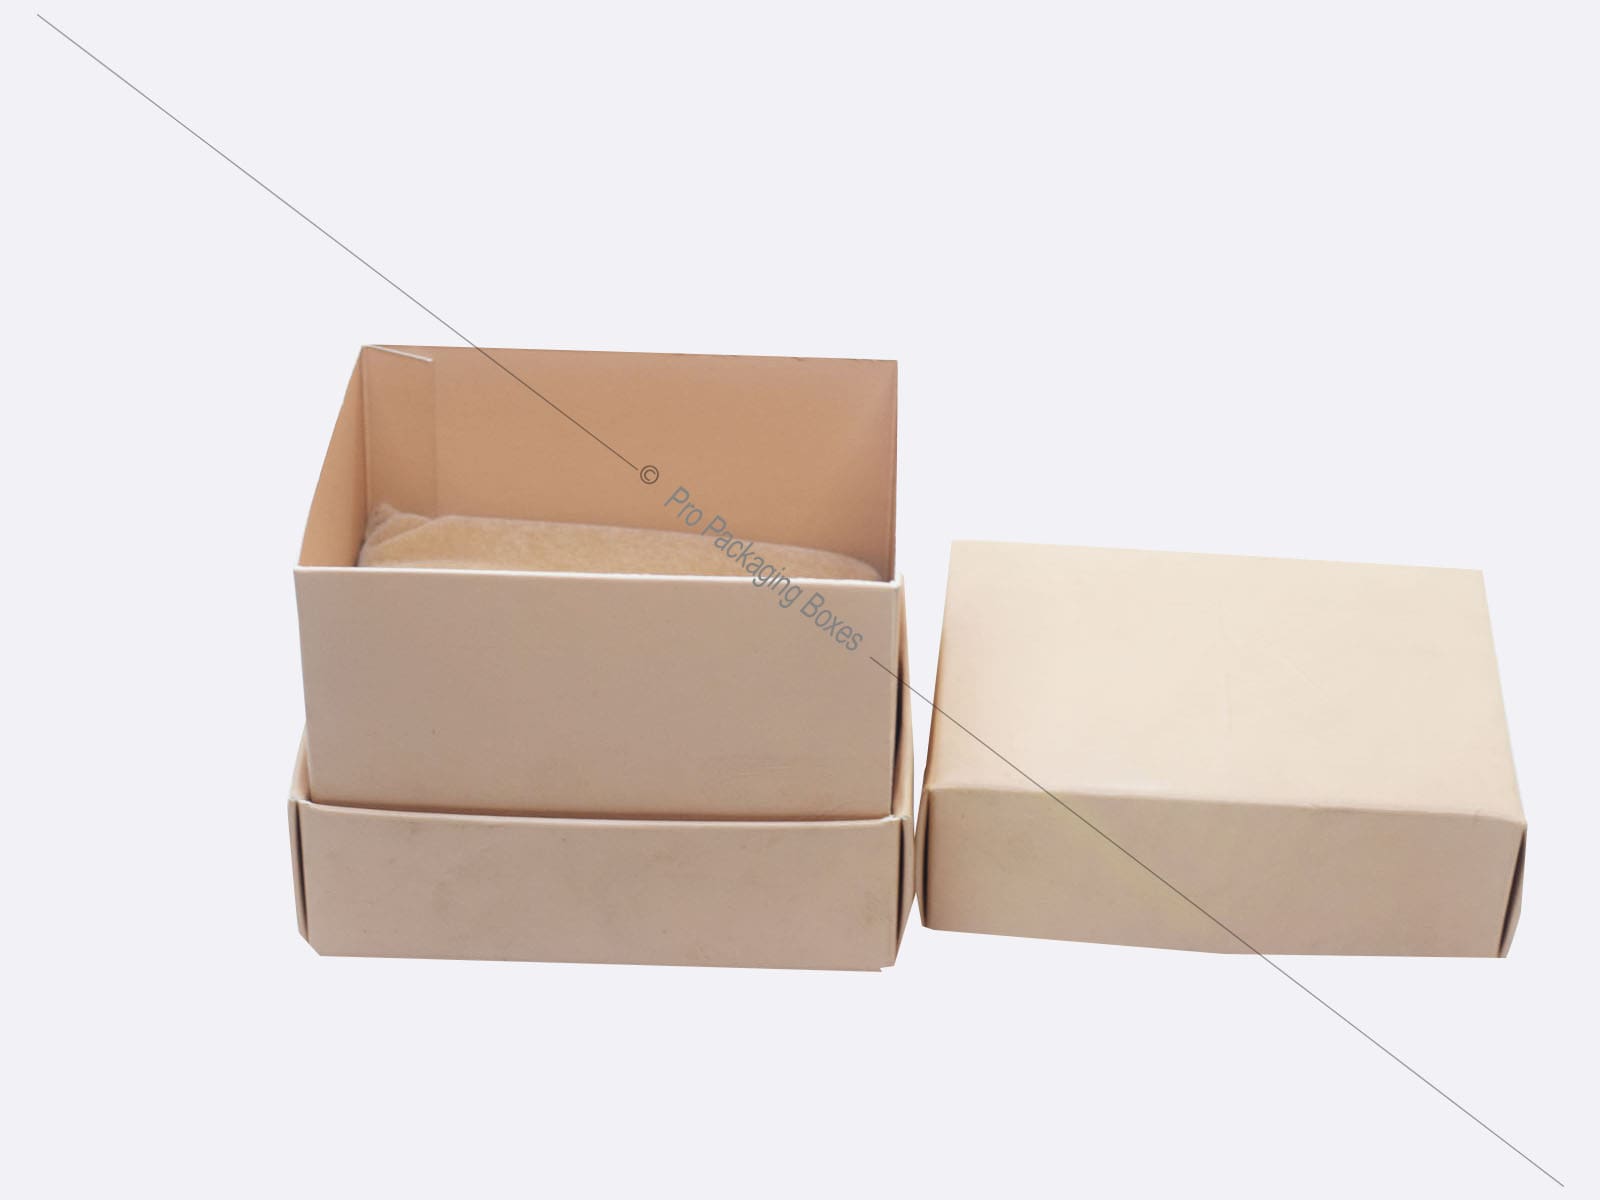 Earrings Packaging Boxes